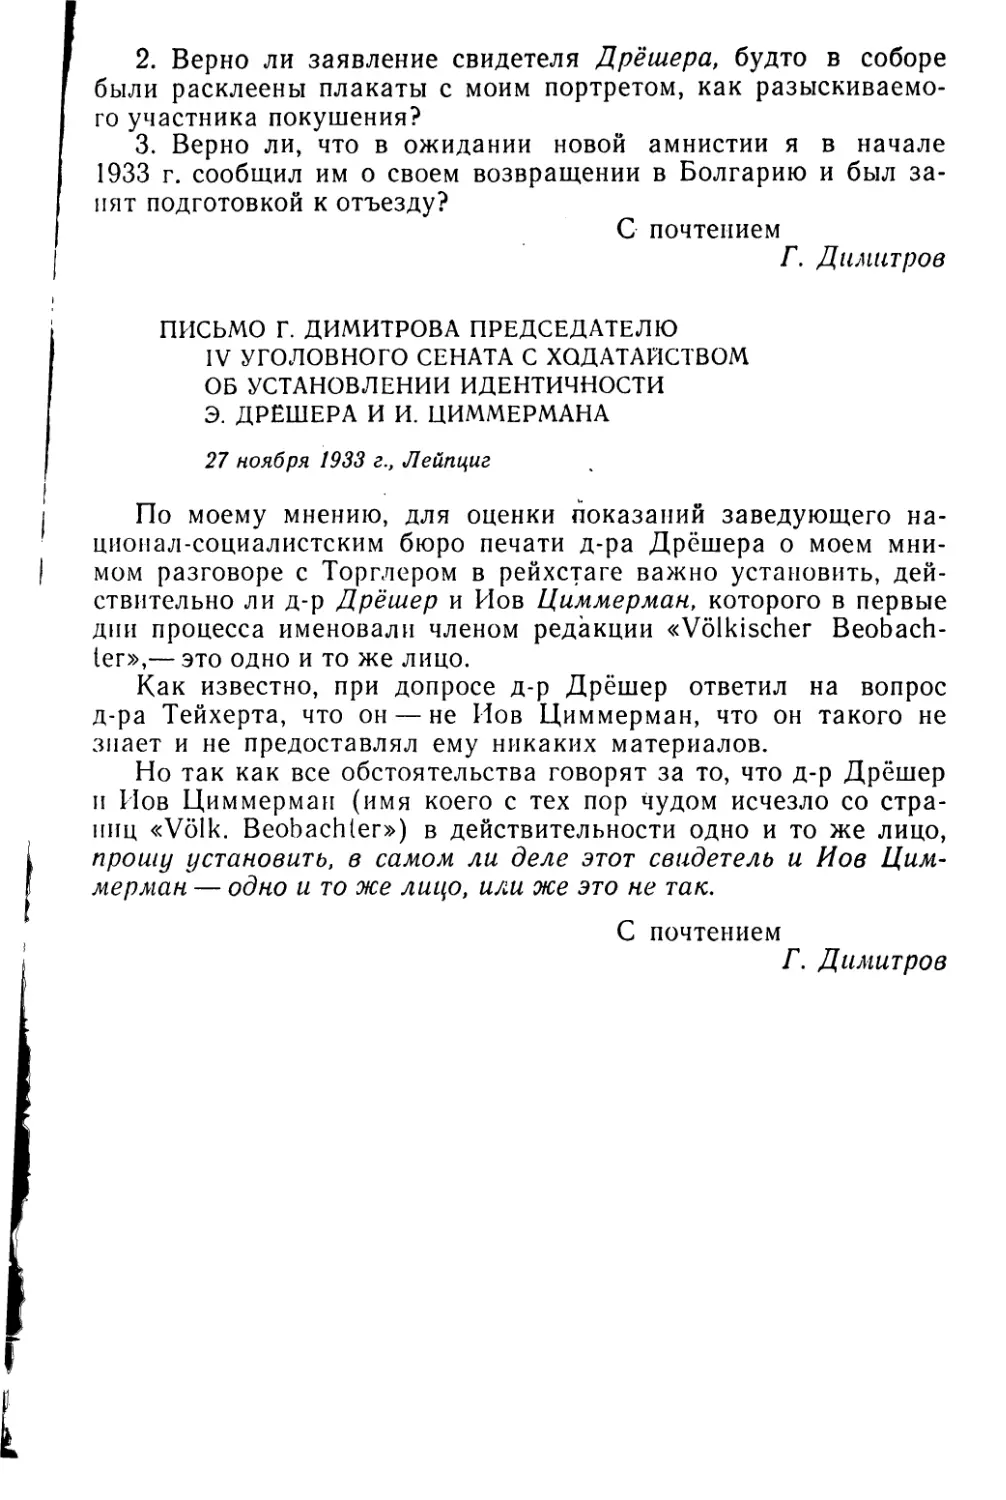 Письмо Г. Димитрова председателю IV уголовного сената с ходатайством об установлении идентичности Э. Дрешера и И. Циммермана. 27 ноября 1933 г